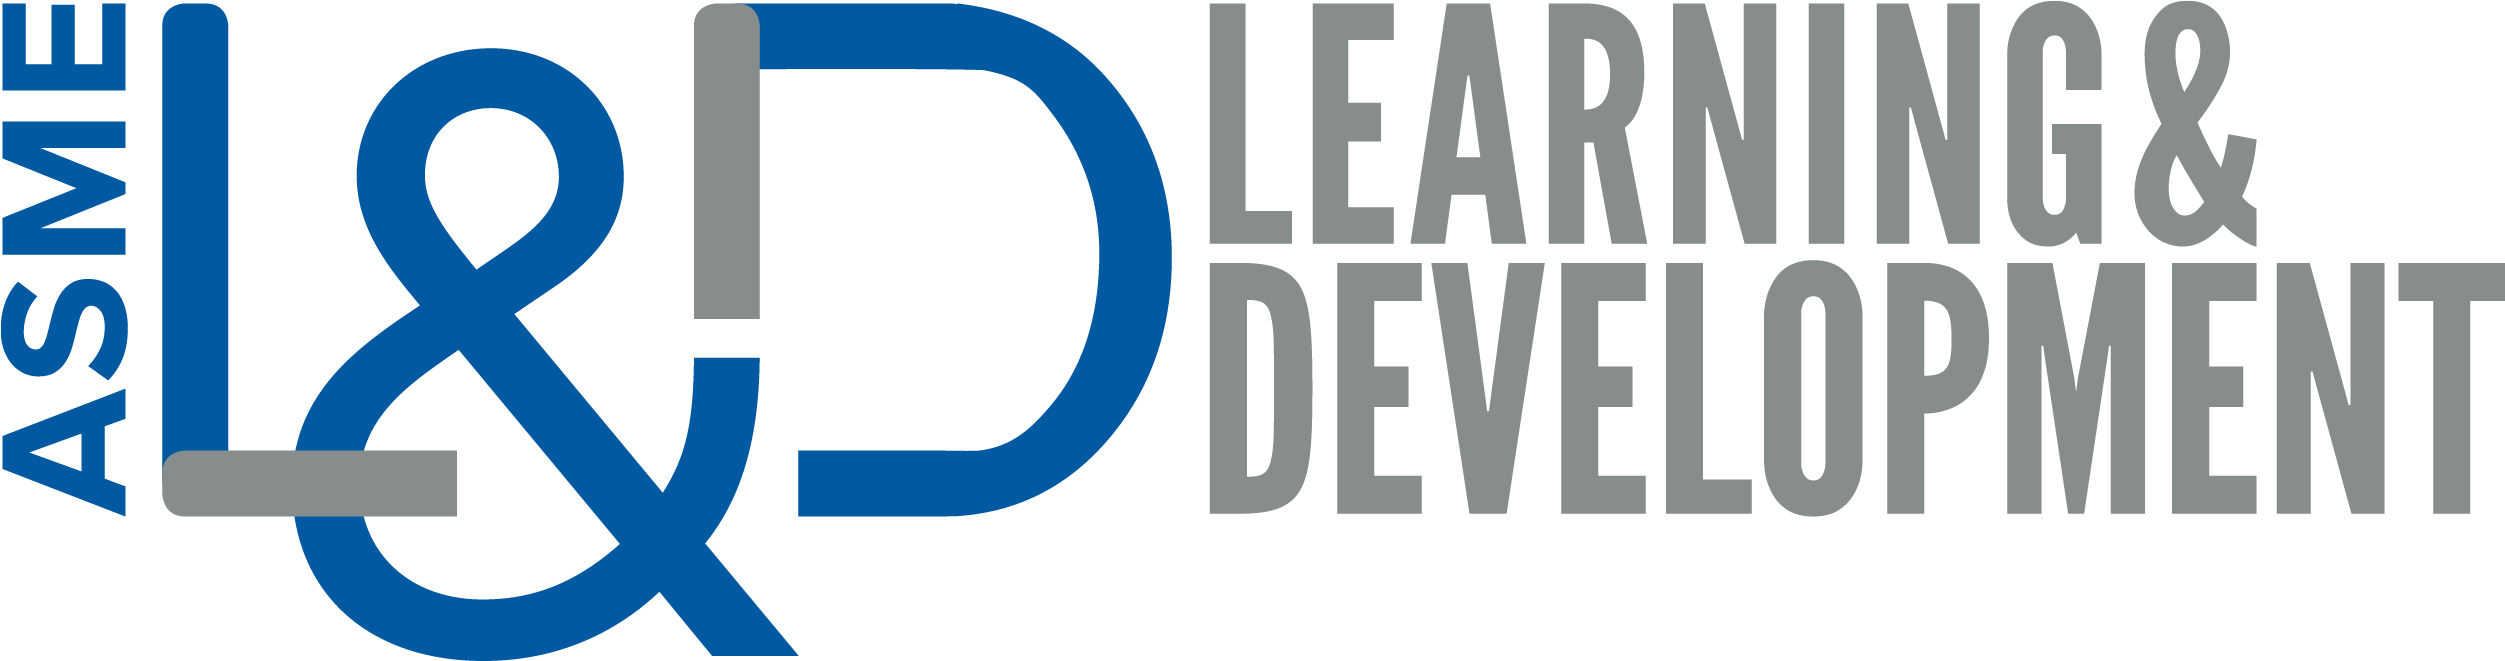 ASME Learning & Development